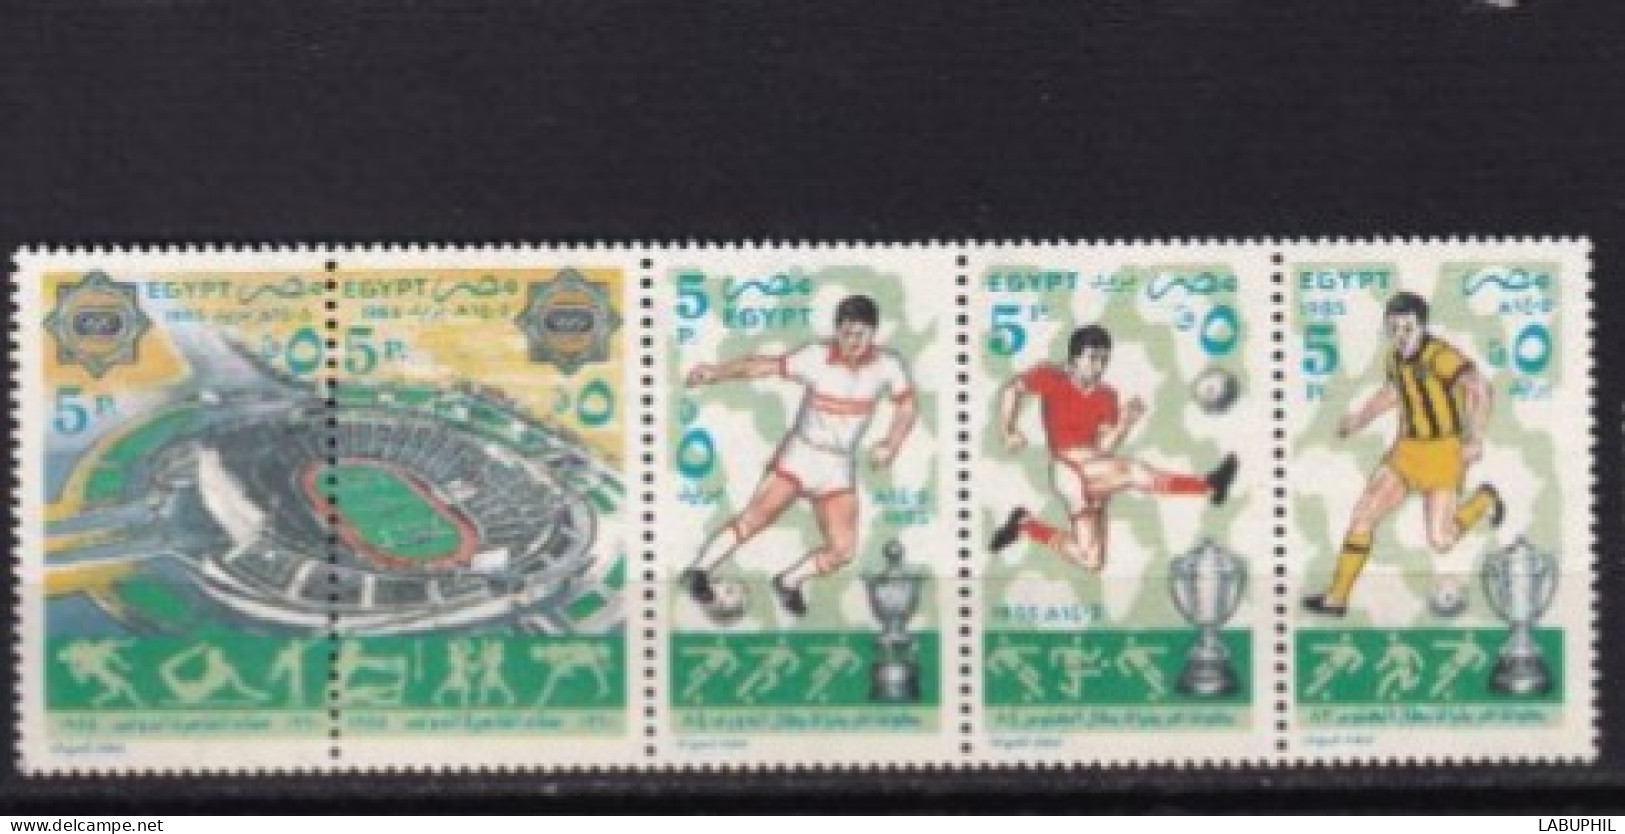 EGYPTE MNH ** 1985 Sport Foot - Neufs